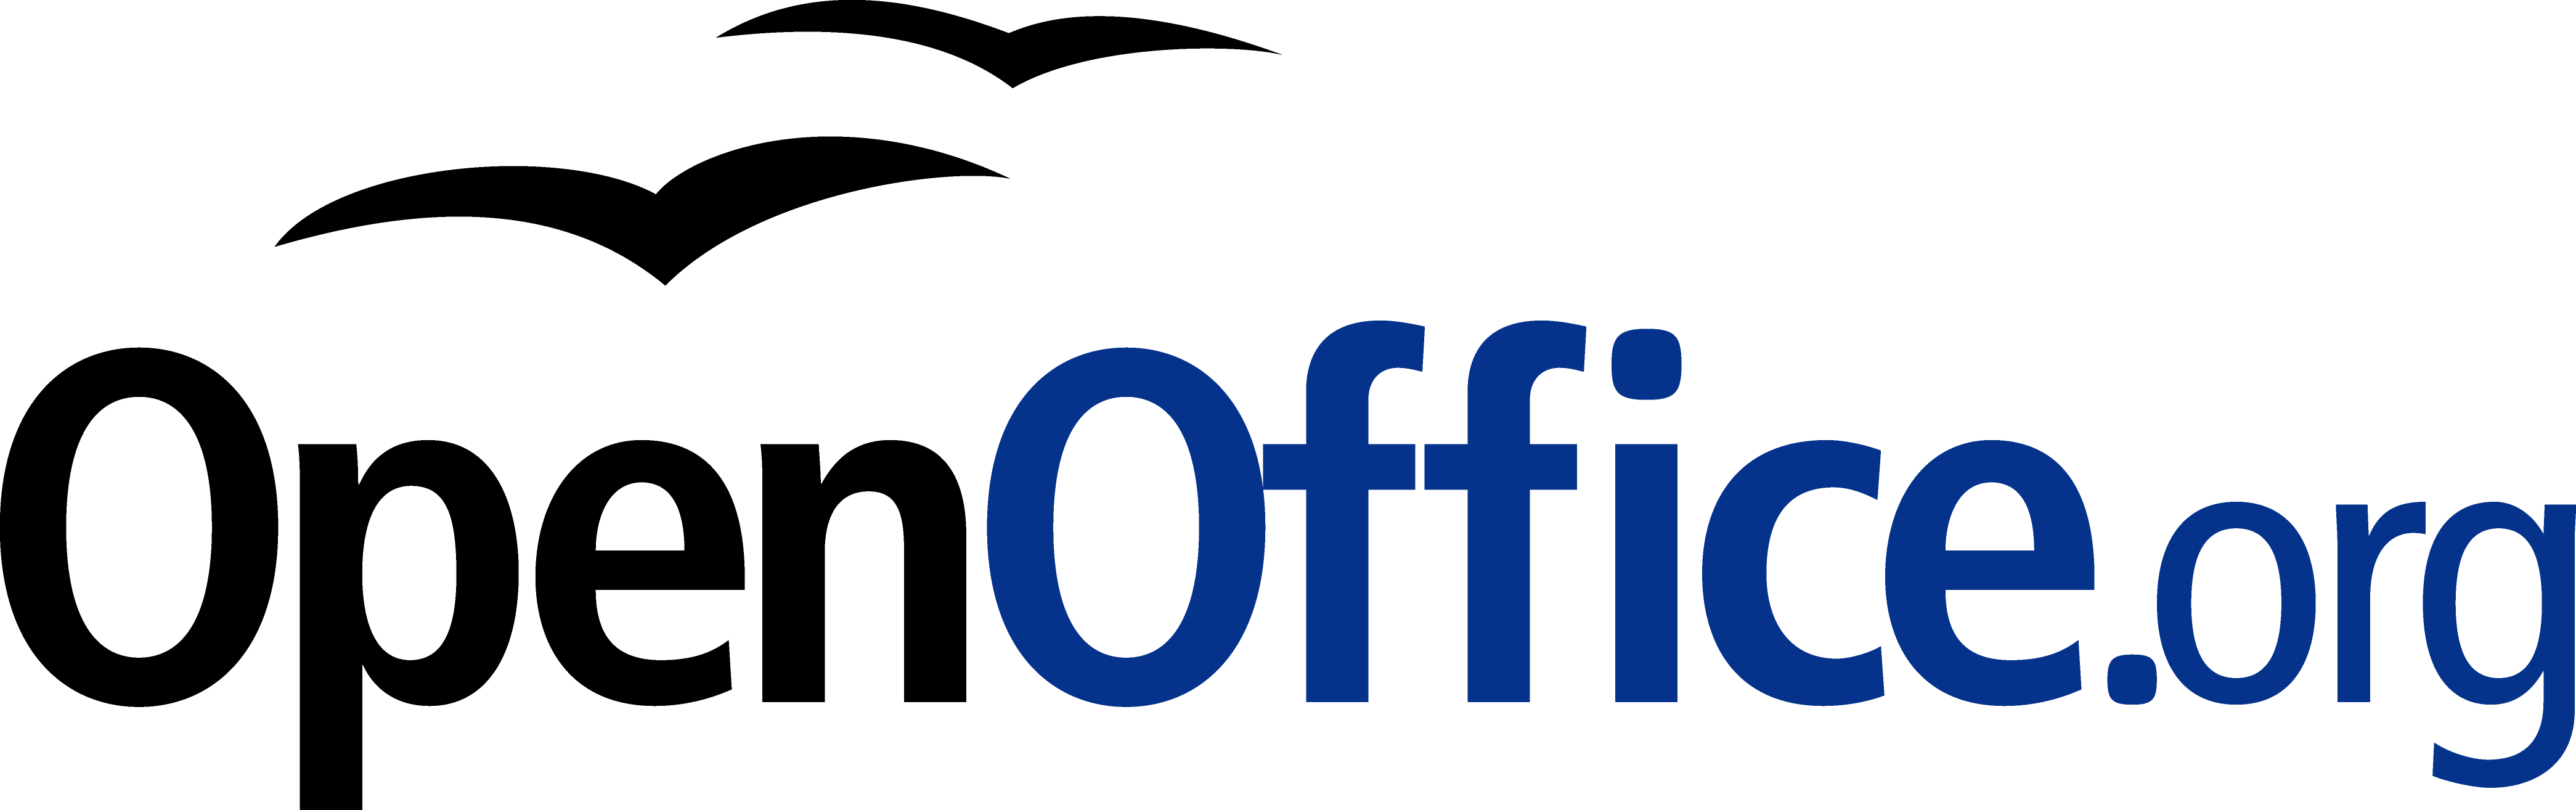 OpenOffice Logo - OpenOffice.org Art Logos Gallery